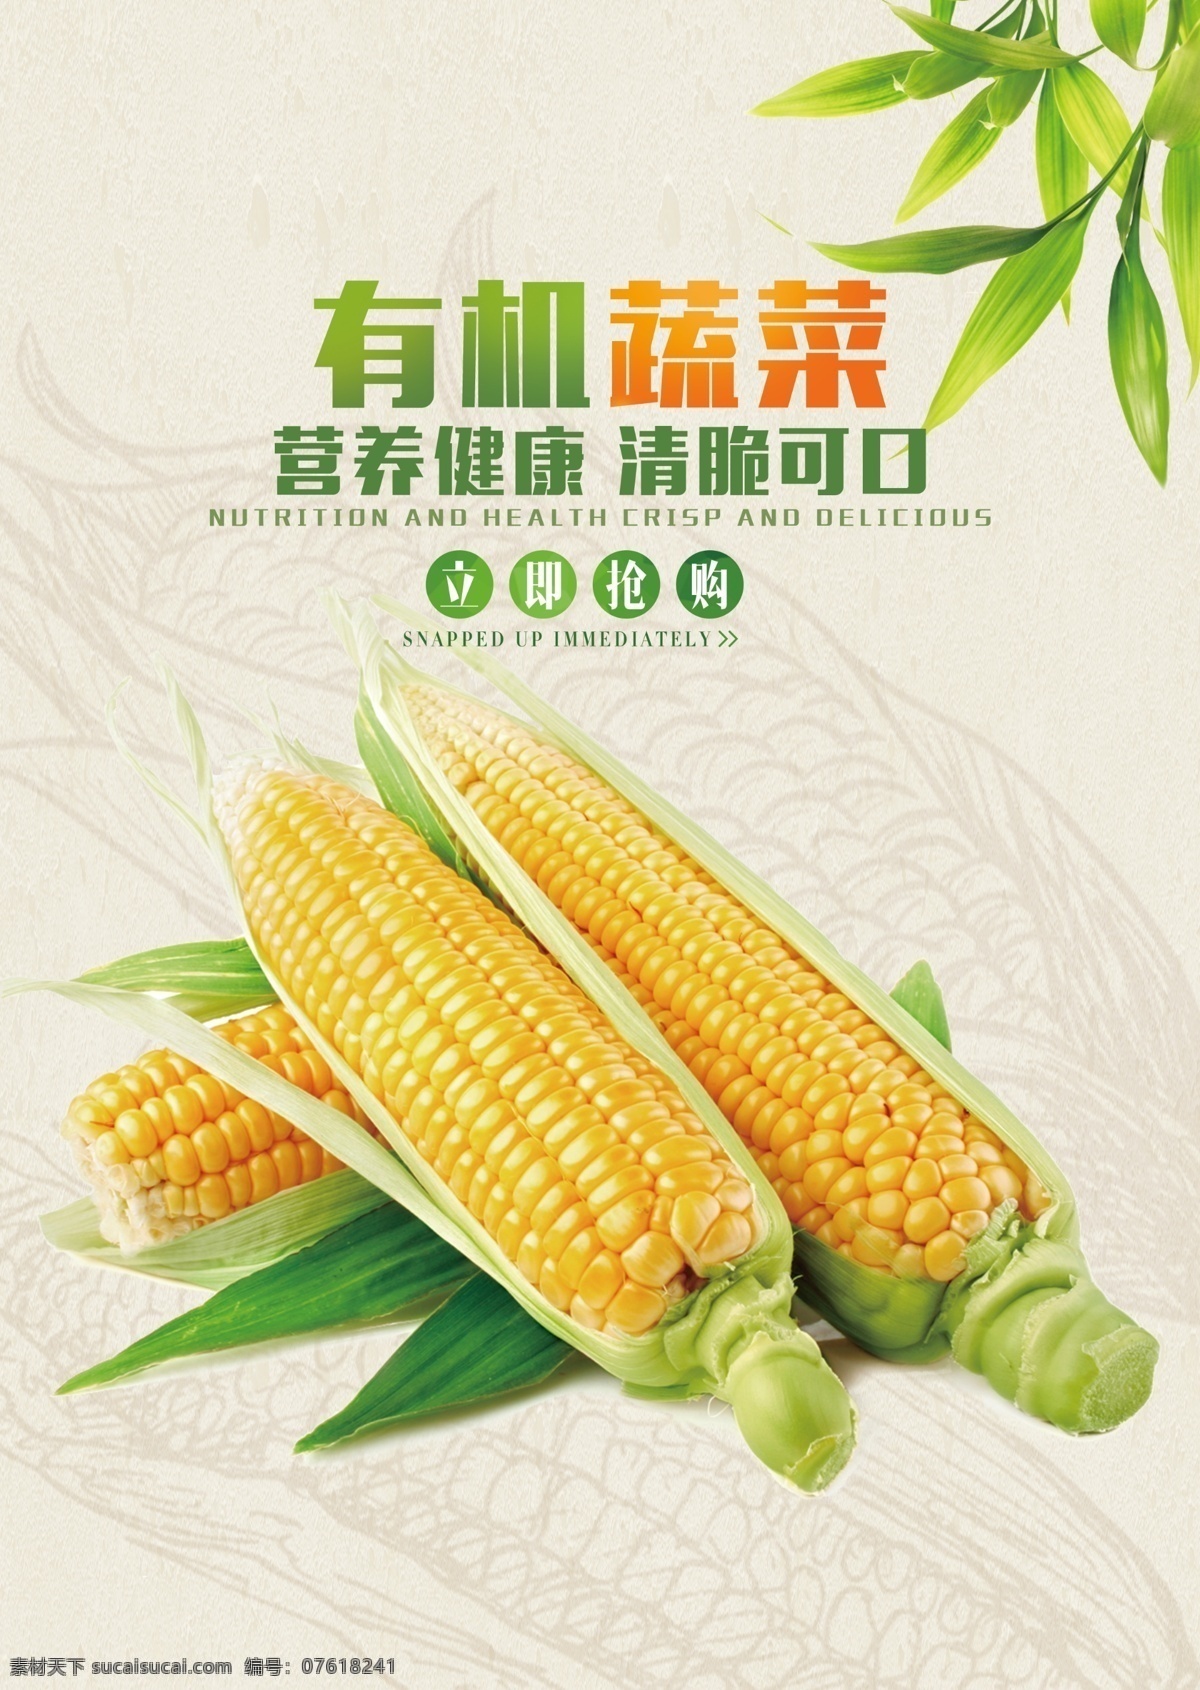 有机 蔬菜 玉米 超市 促销活动 海报 有机蔬菜 促销 活动